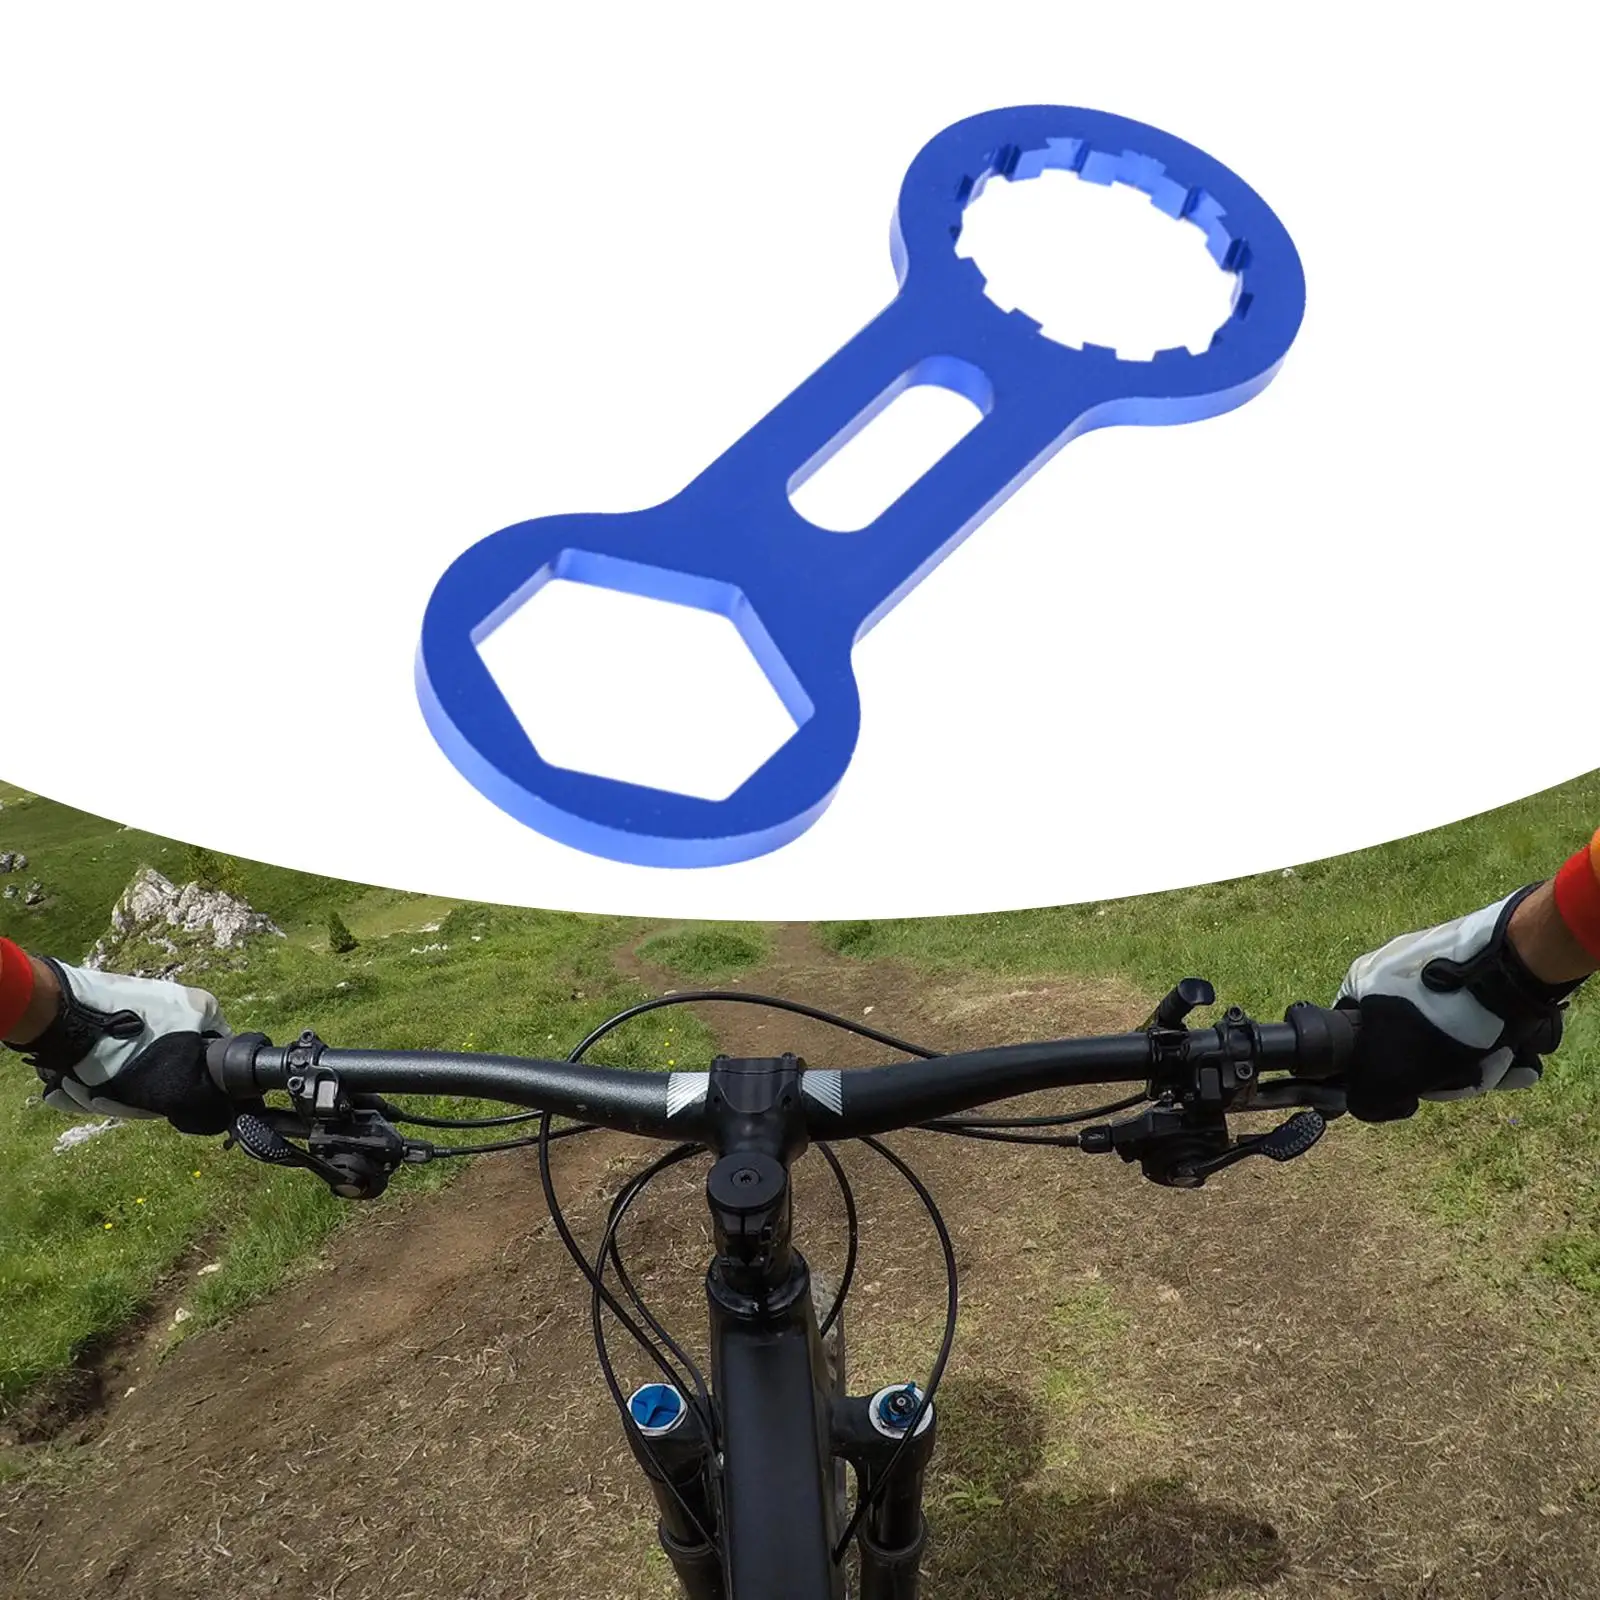 

Колпачки вилки передней вилки горного велосипеда, гаечный ключ для установки и снятия колпачков из алюминиевого сплава